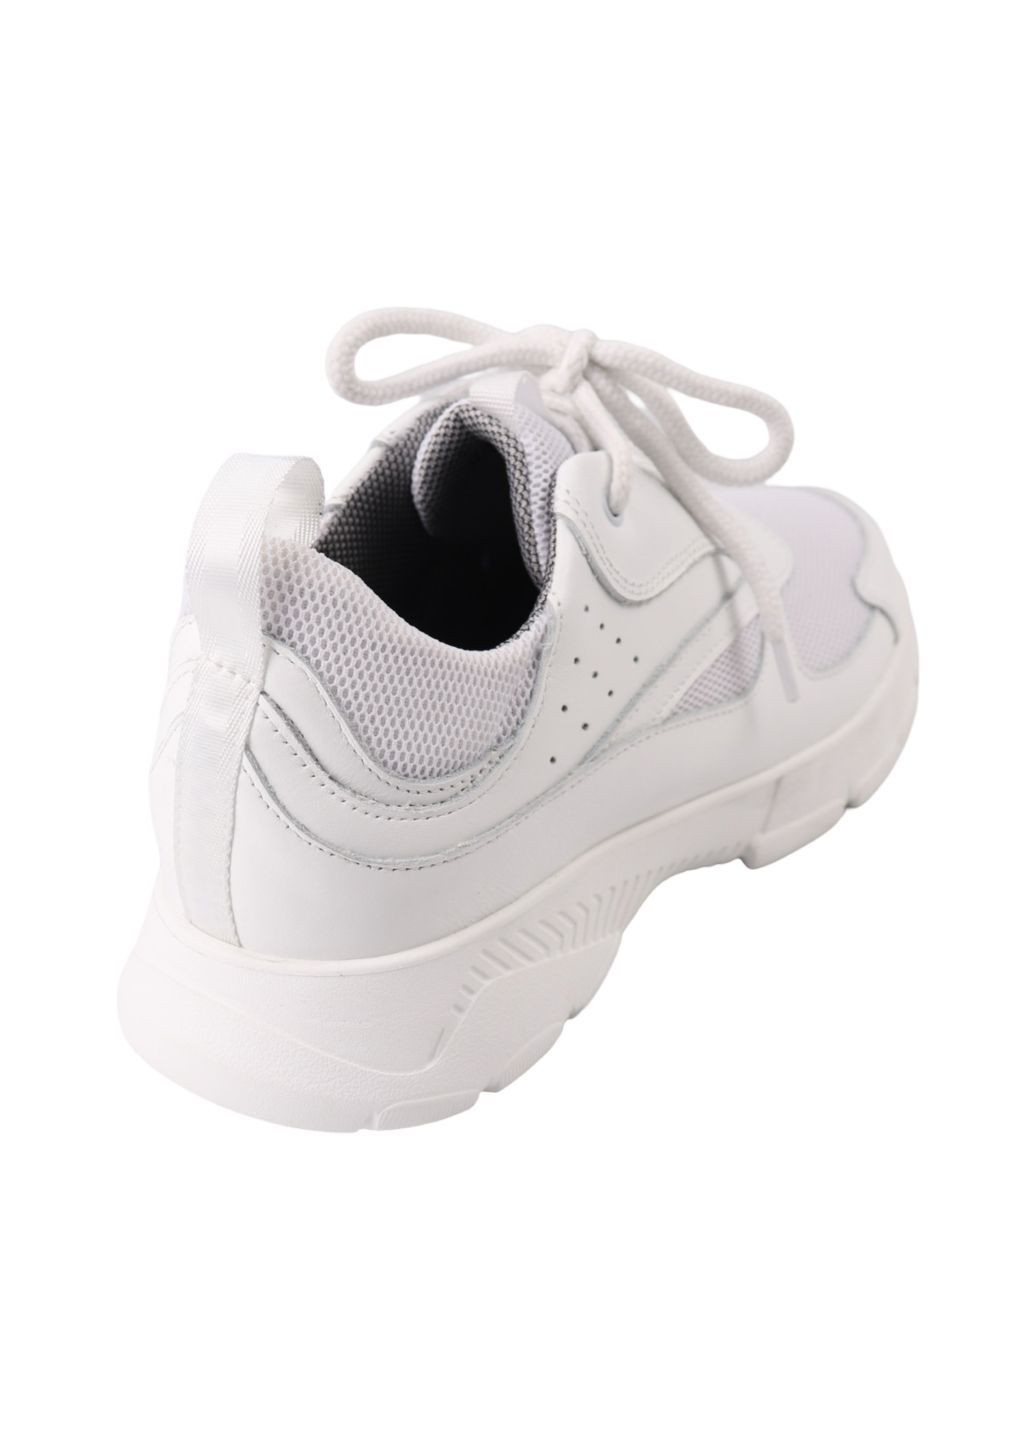 Білі кросівки чоловічі білі текстиль Vadrus 551-24DTS